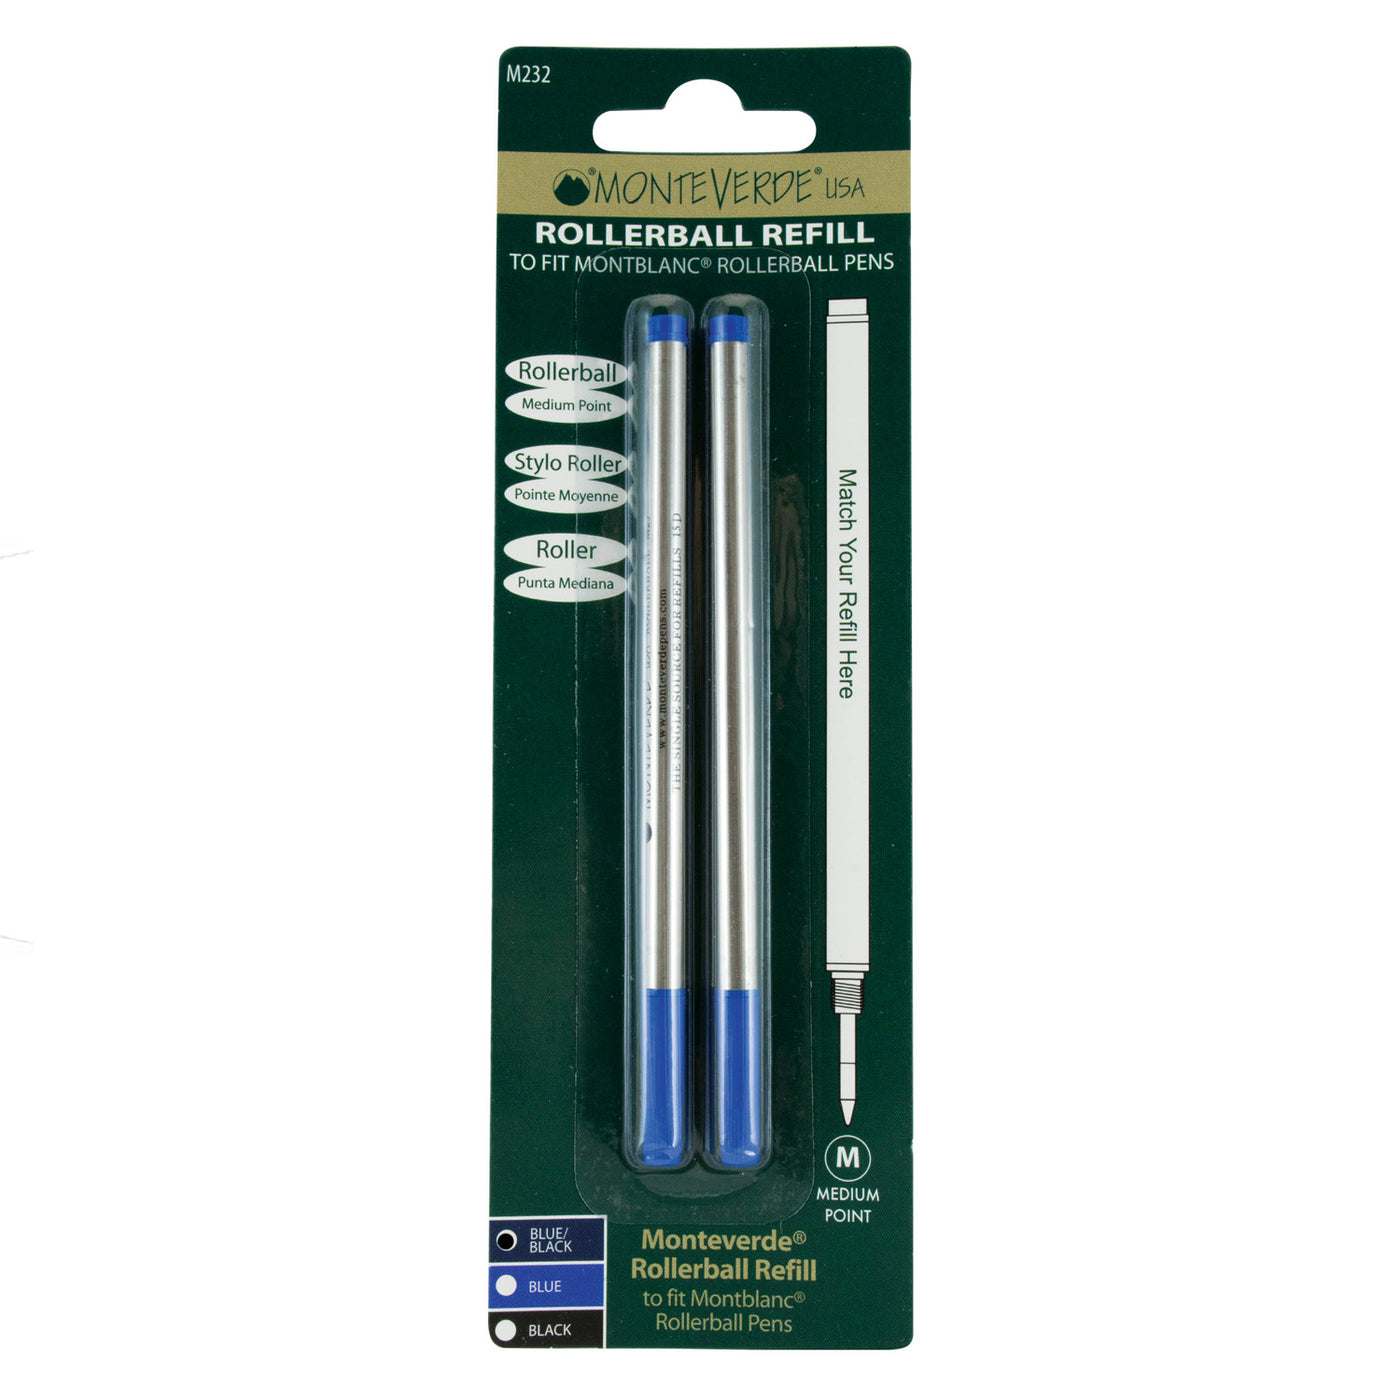 Monteverde Roller Ball Pen Refill for Montblanc - Medium - Blue Black - Pack of 2 4